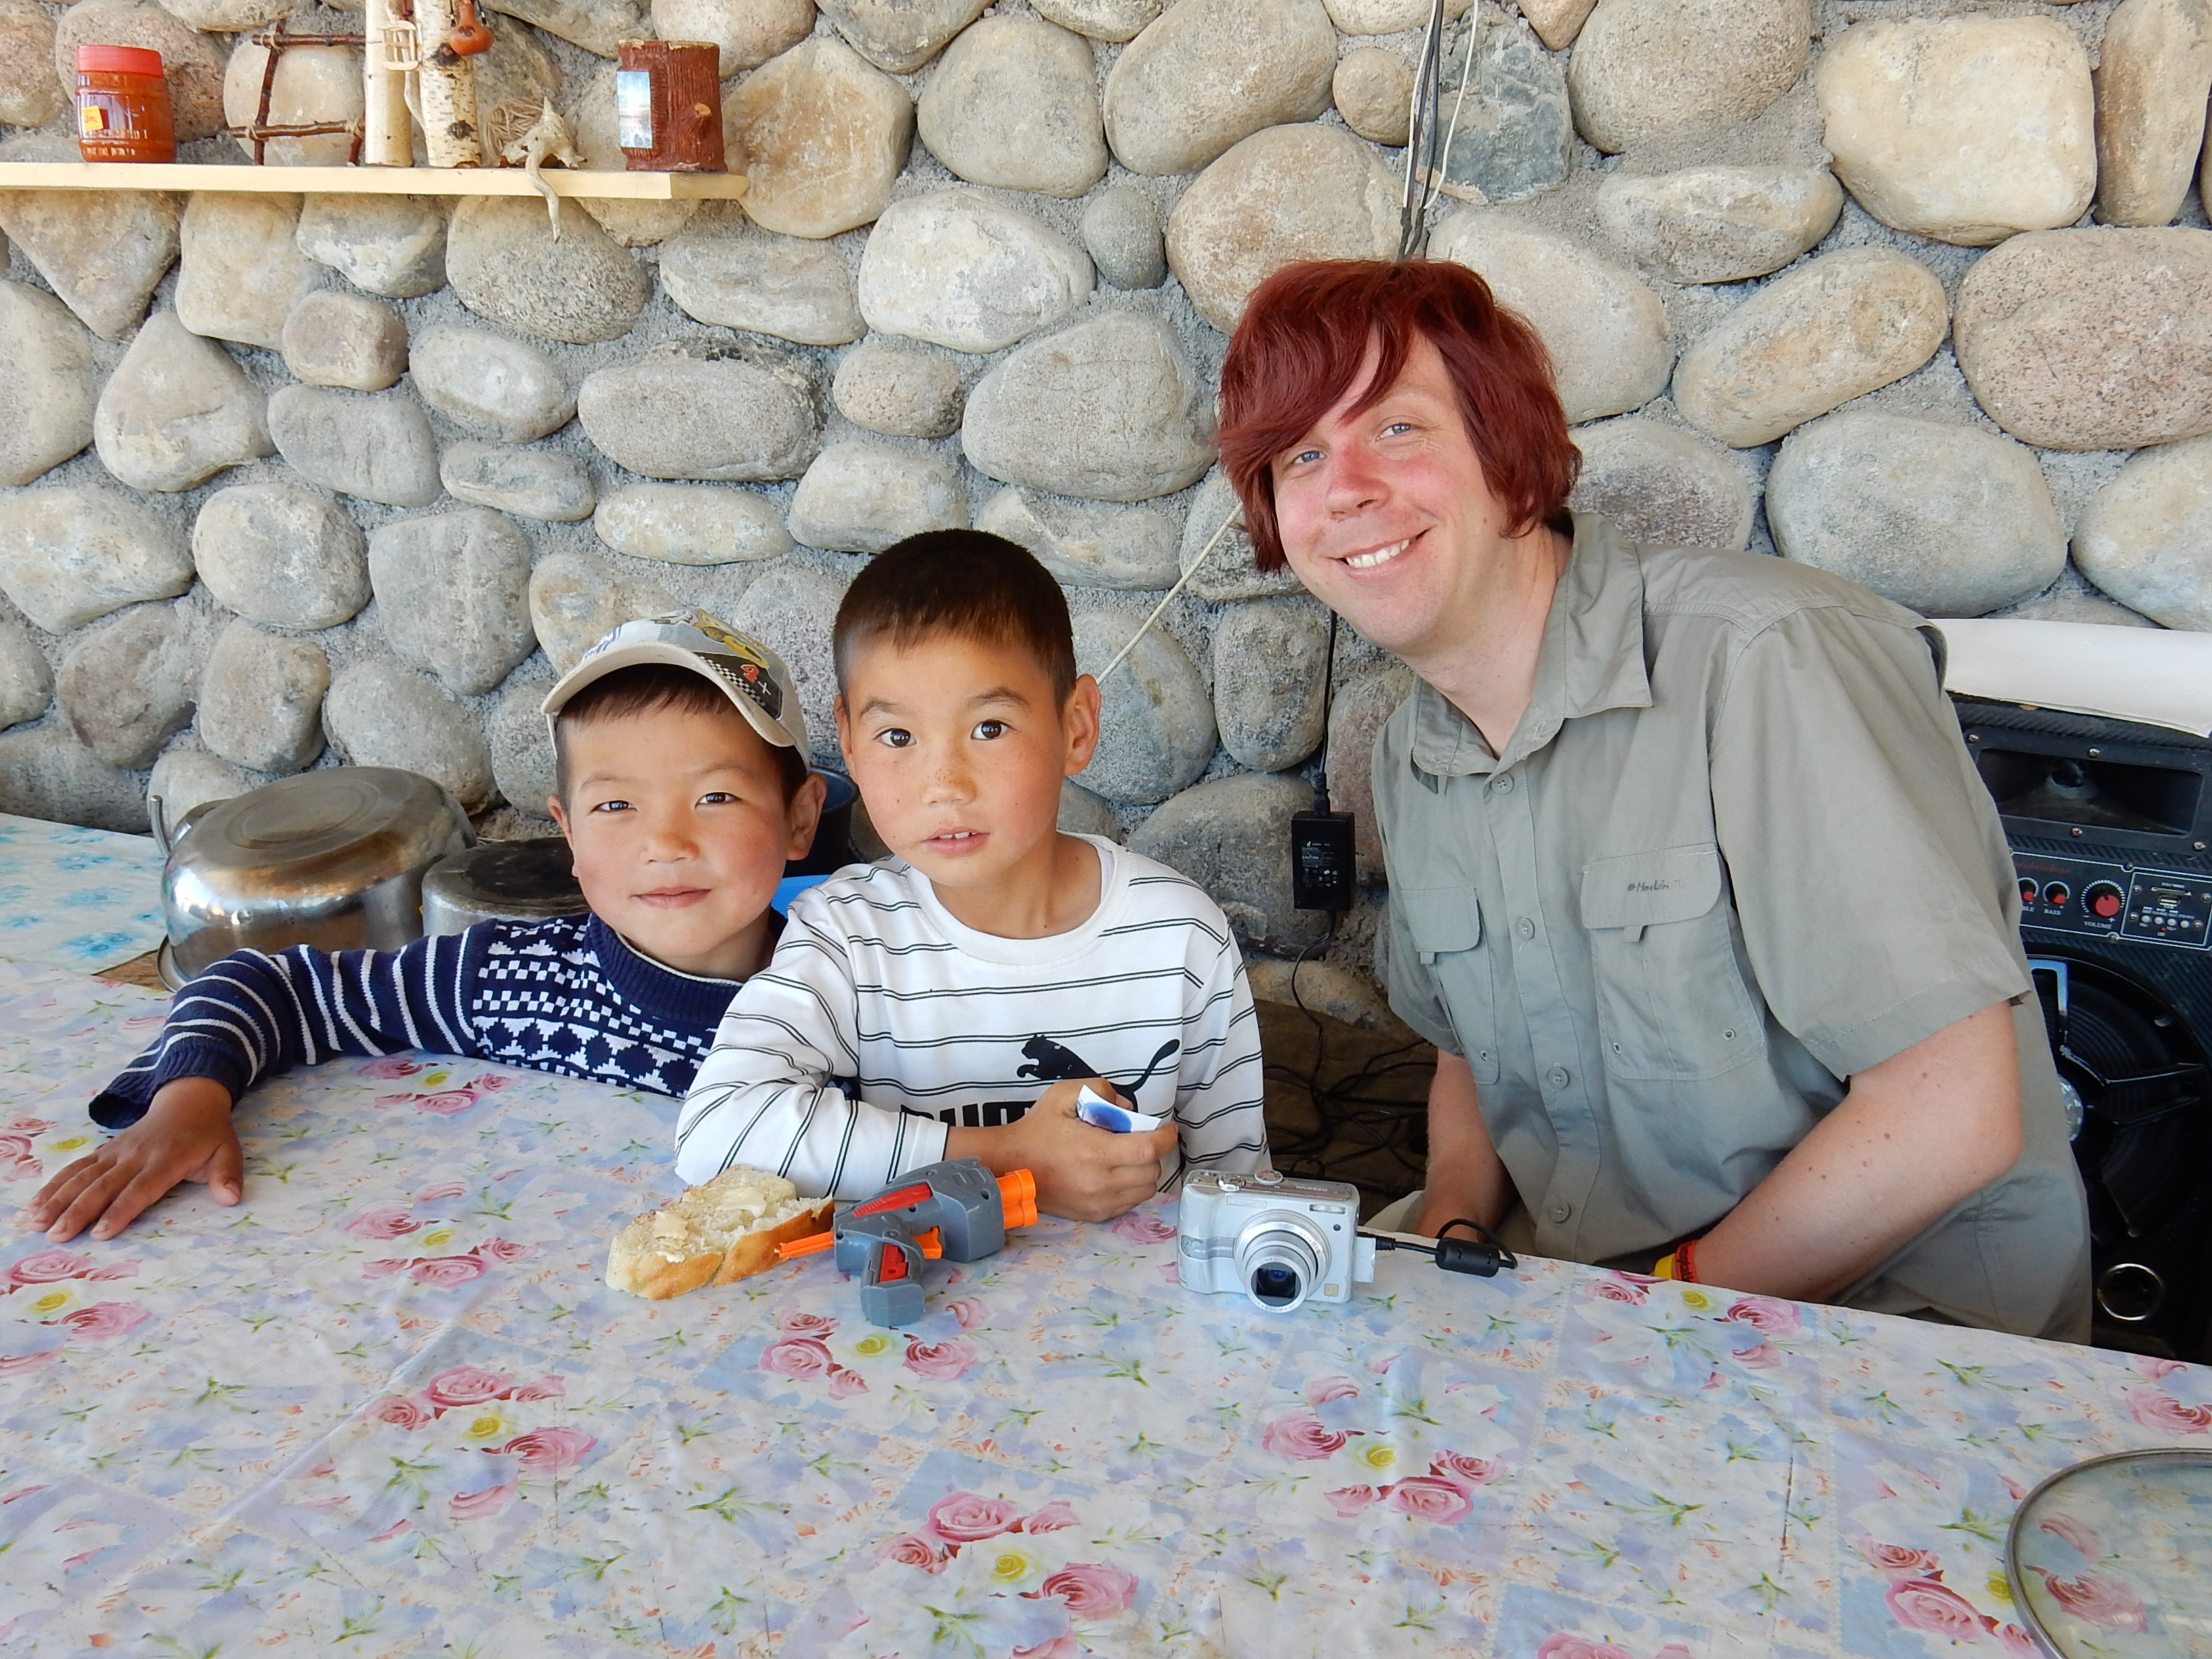 Me and Kyrgyz kids